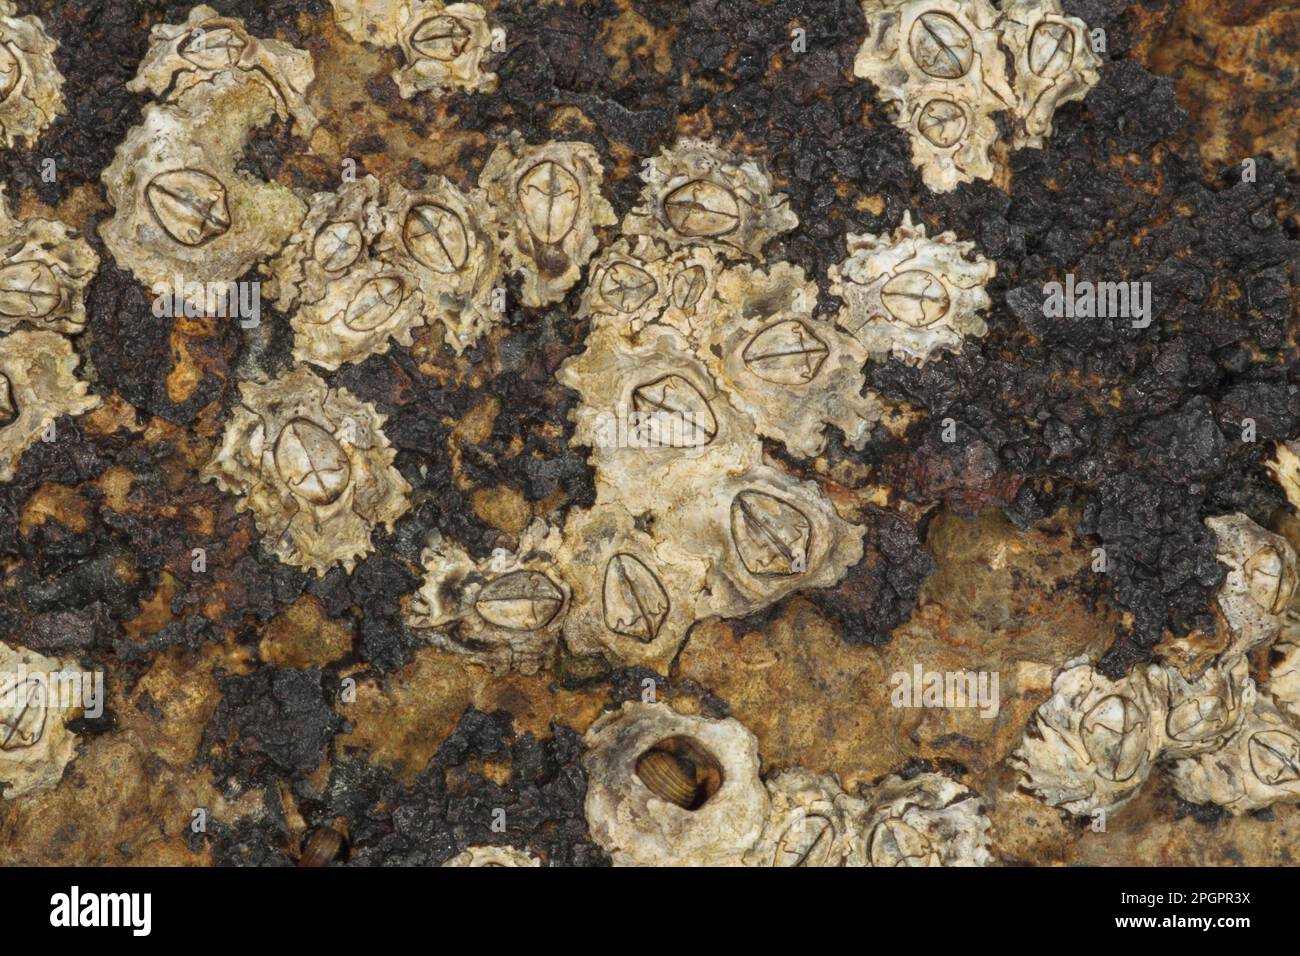 Barnacle d'corne adulte (Semibalanus balanoides), exposé sur les côtes rocheuses à marée basse, Swanage, Dorset, Angleterre, Royaume-Uni Banque D'Images